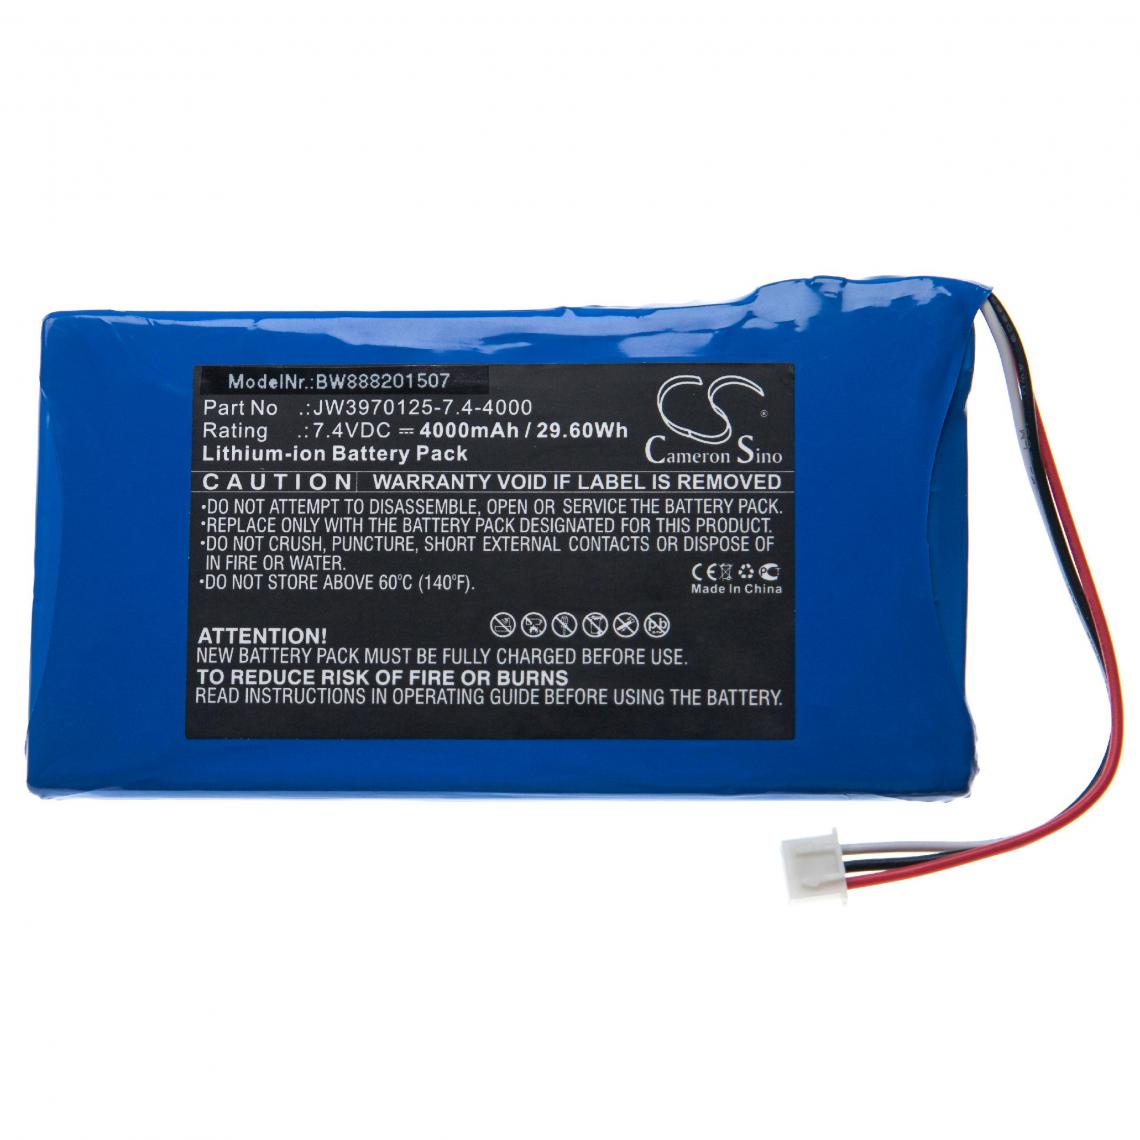 Vhbw - vhbw batterie remplace Xtool JW3970125-7.4-4000 pour appareil de diagnostique automobile (4000mAh, 7,4V, Li-Ion) - Piles rechargeables